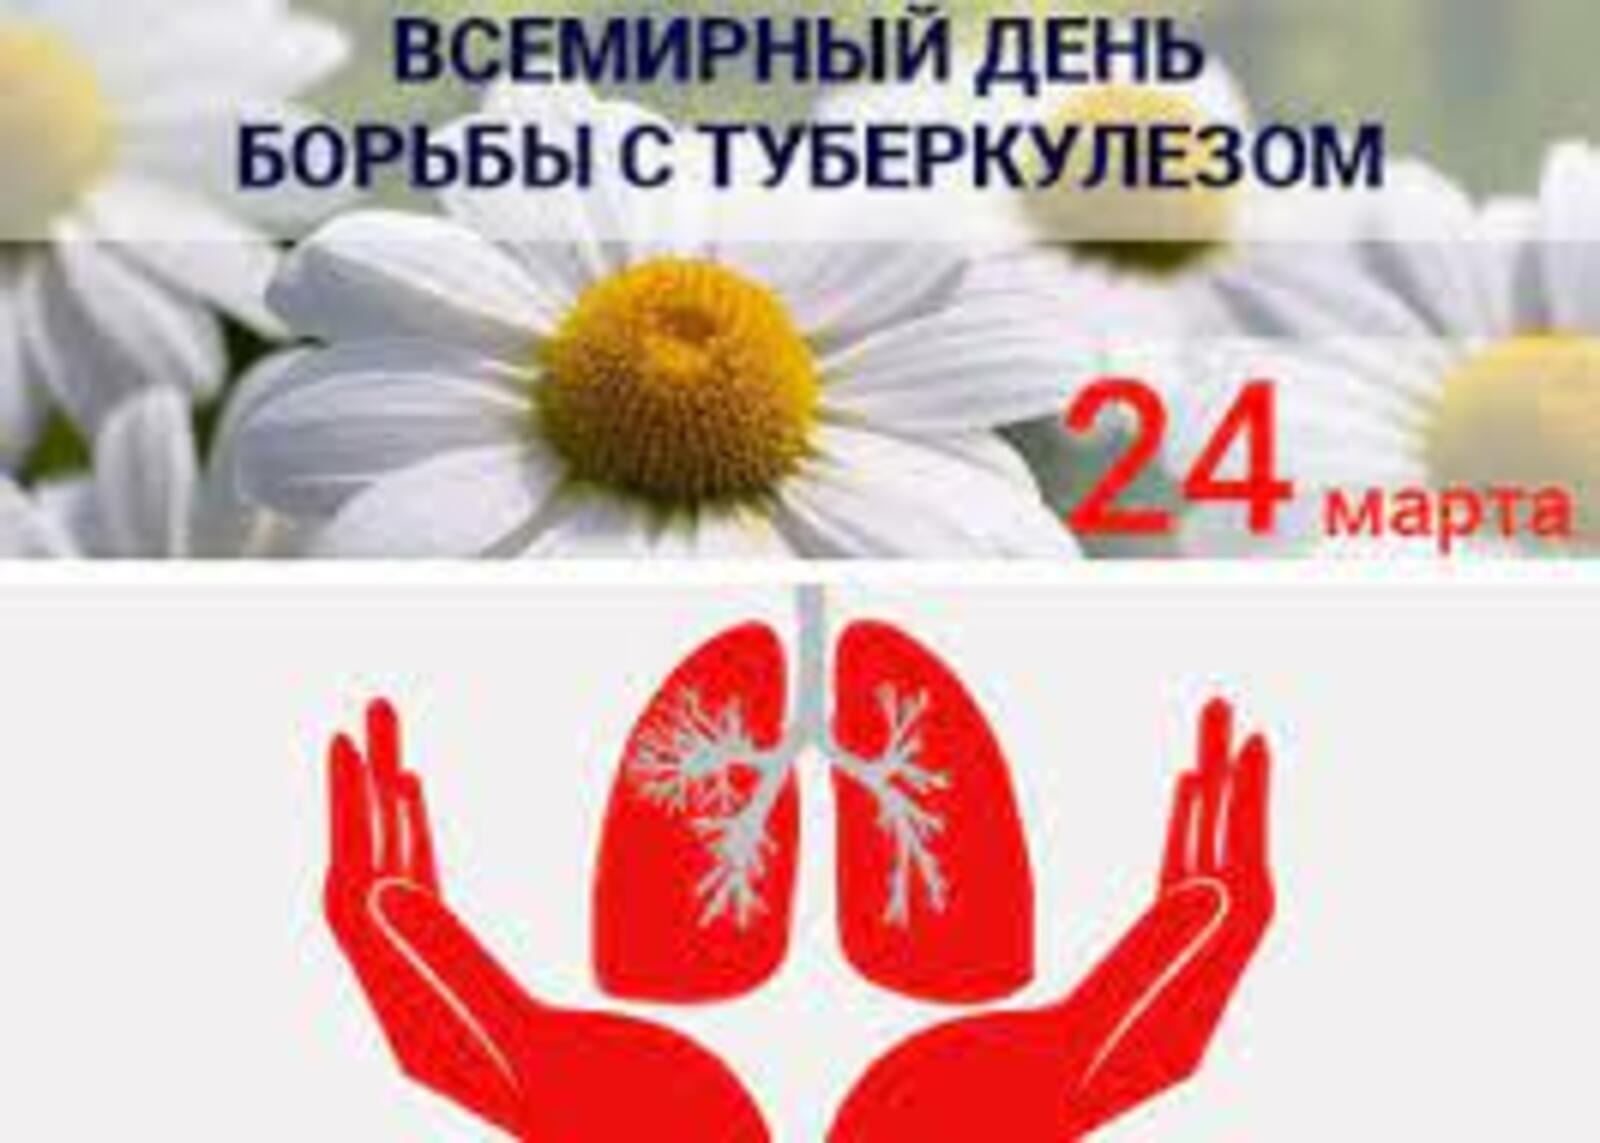 24 марта – Всемирный День борьбы с туберкулезом!